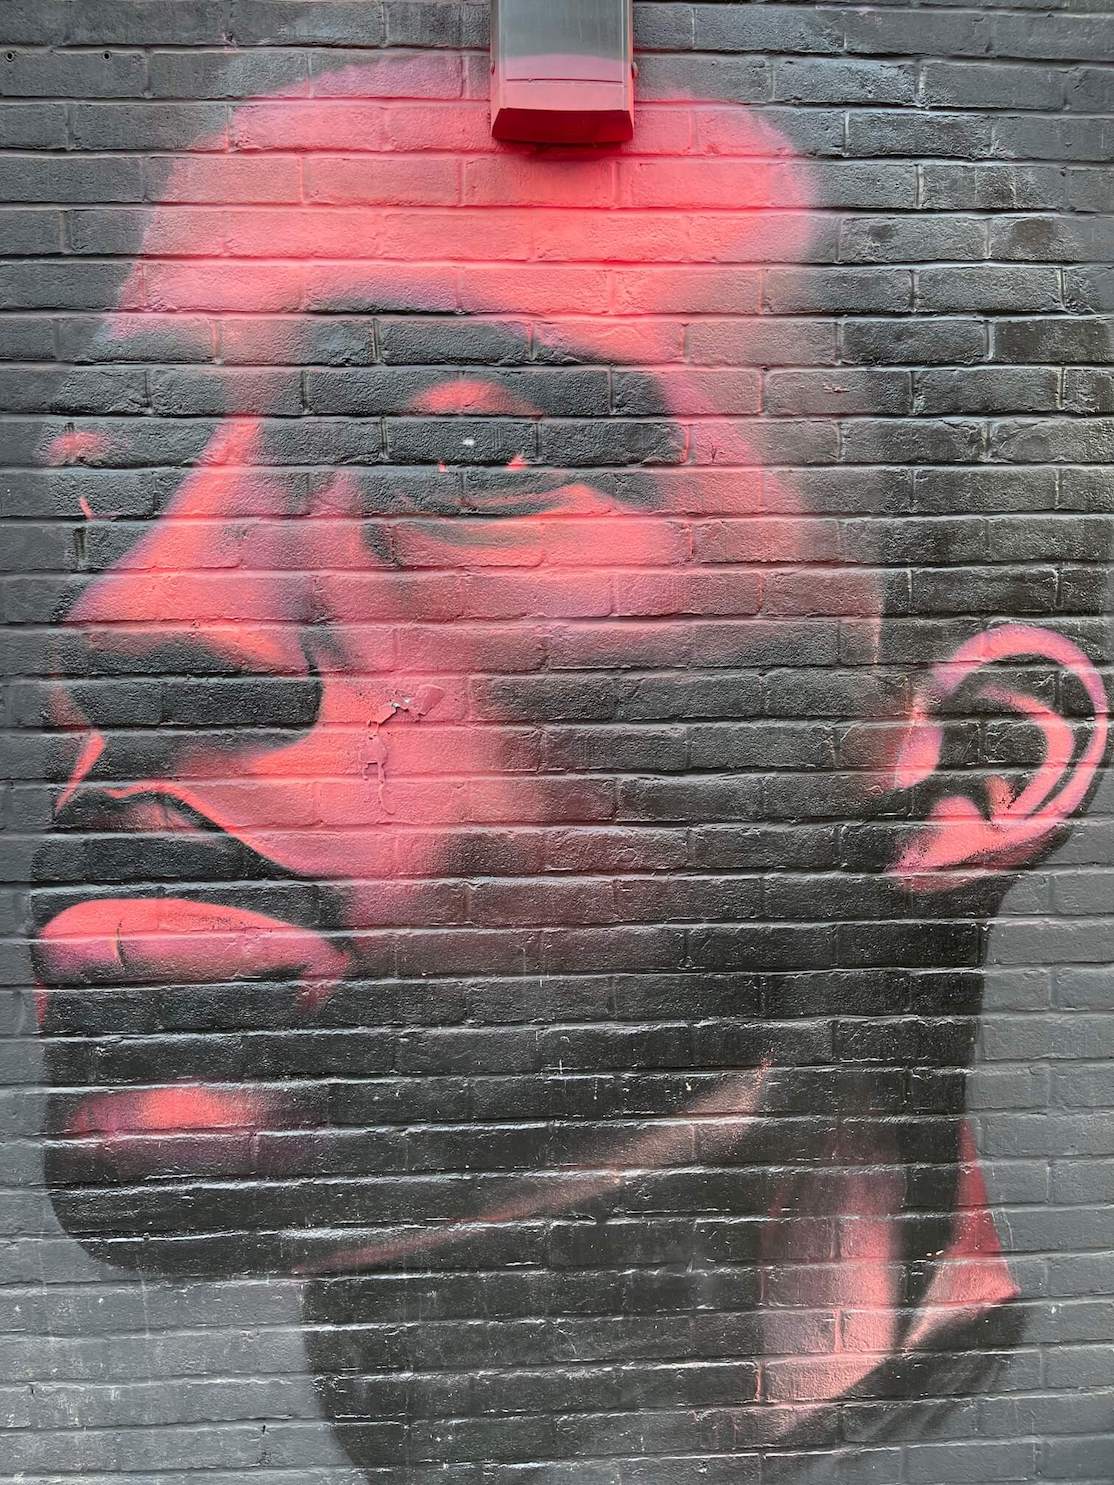 Um mural de retrato rosa neon de um homem feito por David Speed em Redchurch St, Londres